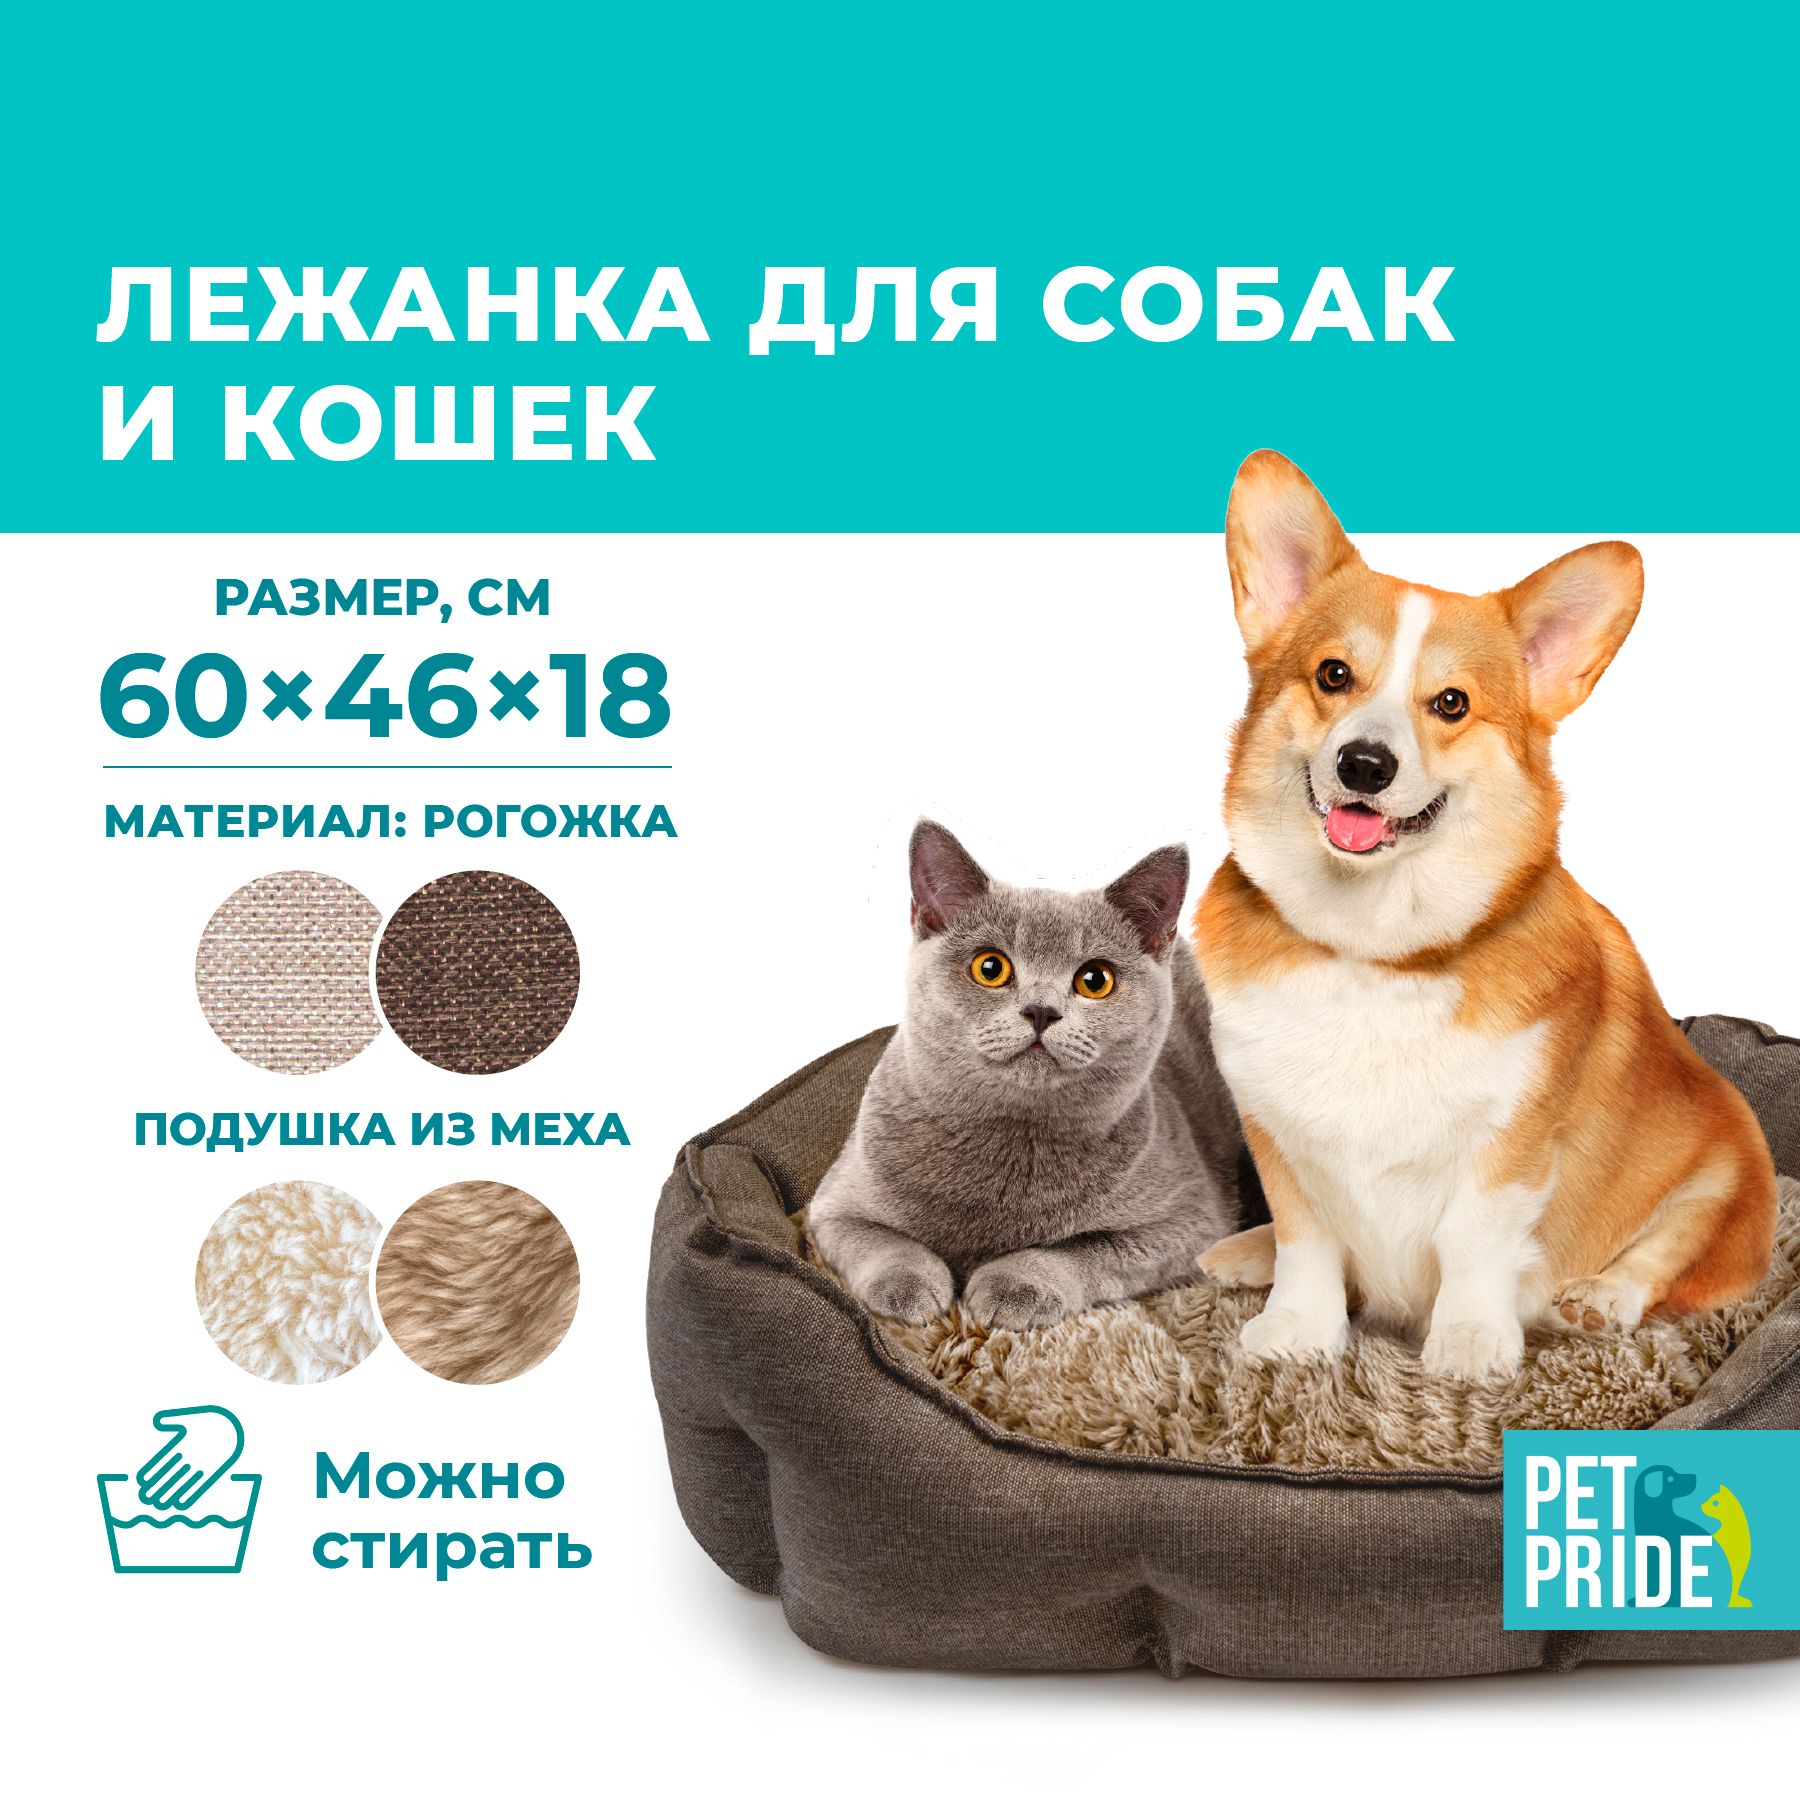 Pet Pride. Pride 60 характеристика. Pet pride для кошек